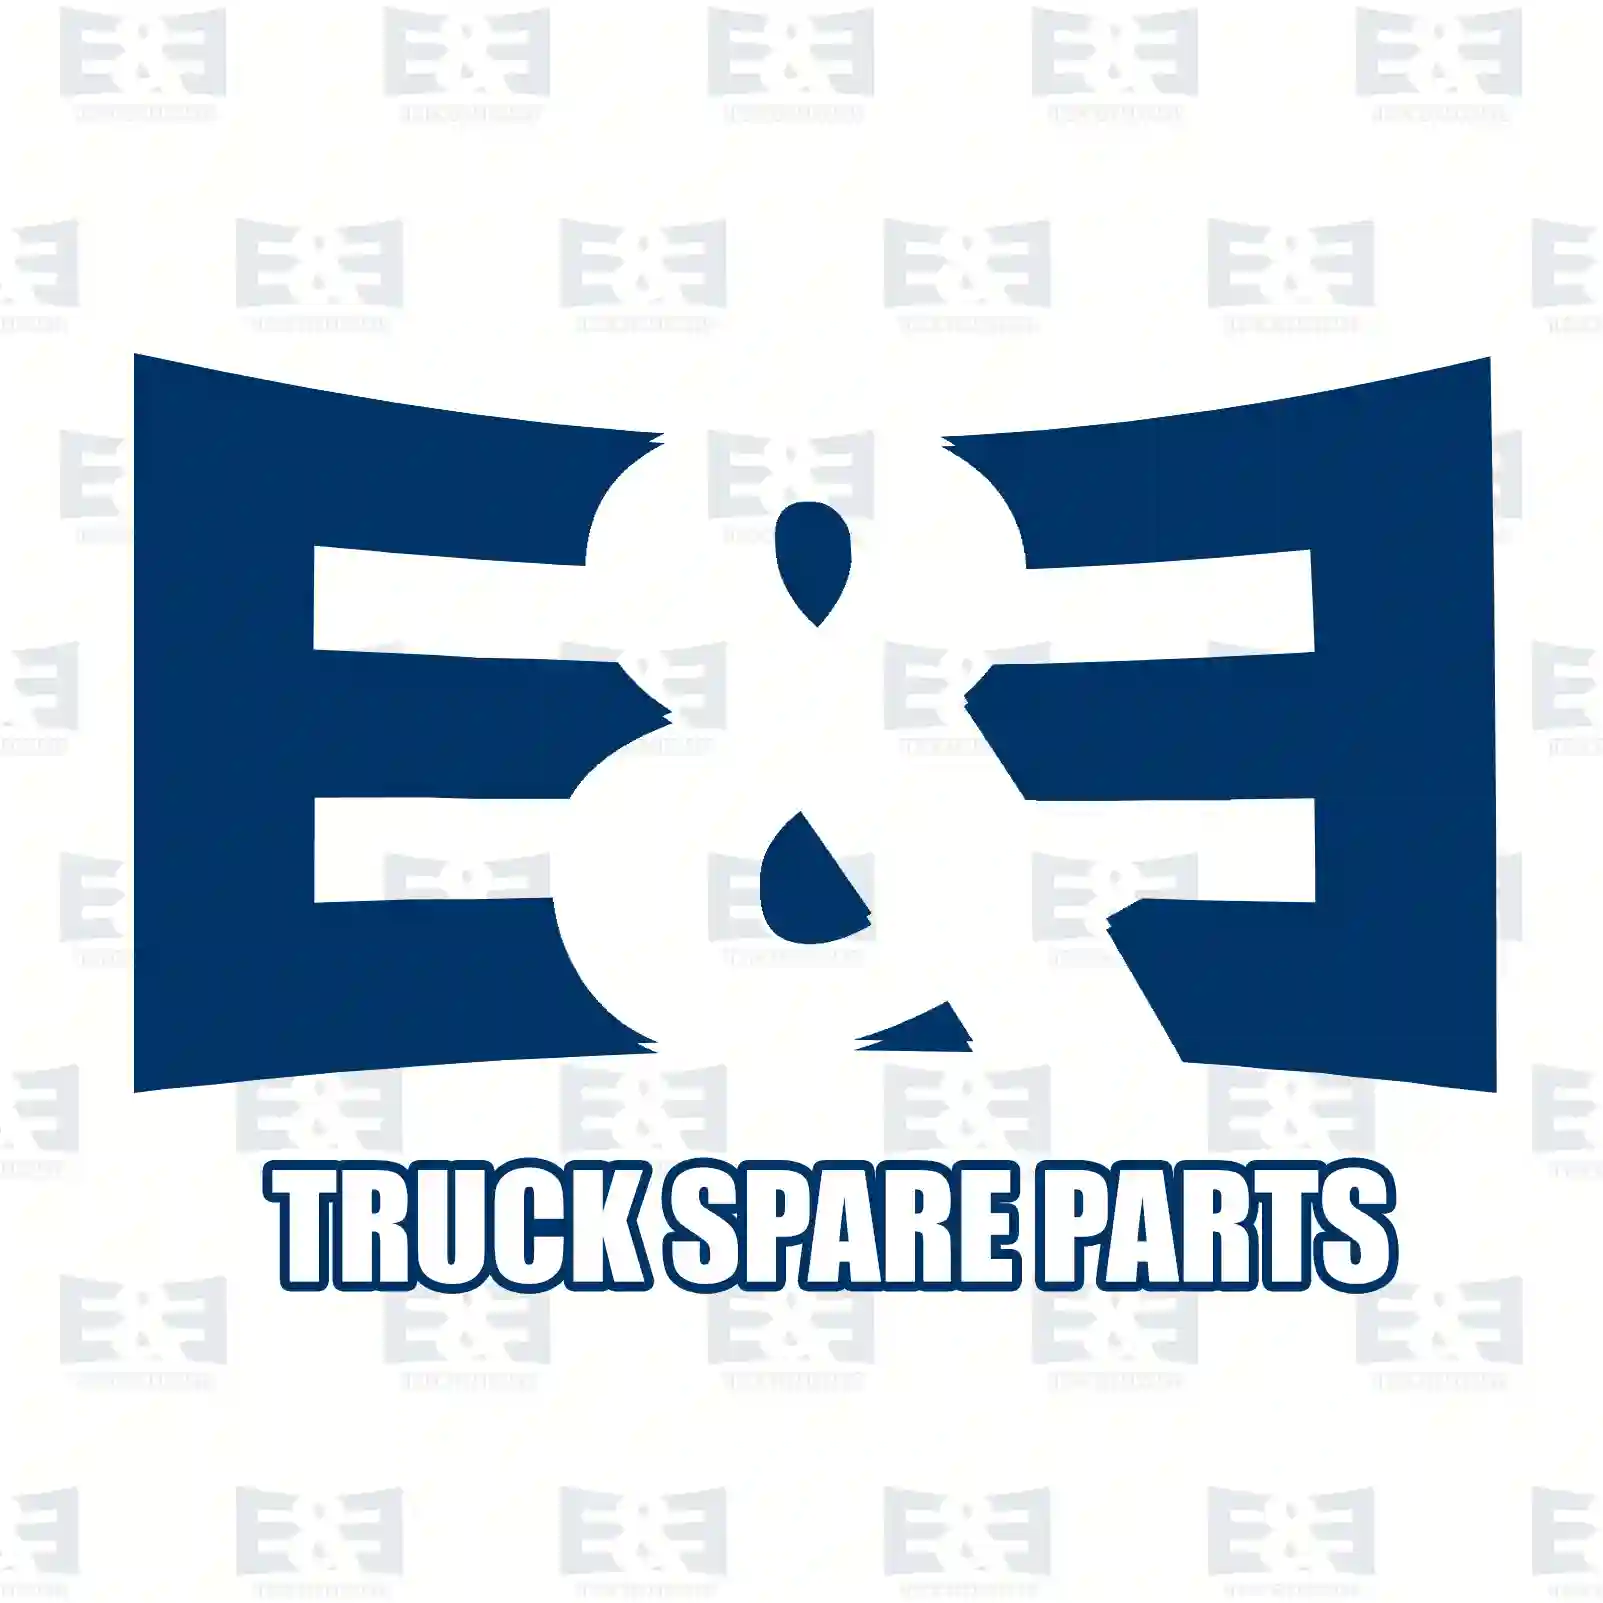 Unit injector, 2E2286092, 21246331 ||  2E2286092 E&E Truck Spare Parts | Truck Spare Parts, Auotomotive Spare Parts Unit injector, 2E2286092, 21246331 ||  2E2286092 E&E Truck Spare Parts | Truck Spare Parts, Auotomotive Spare Parts